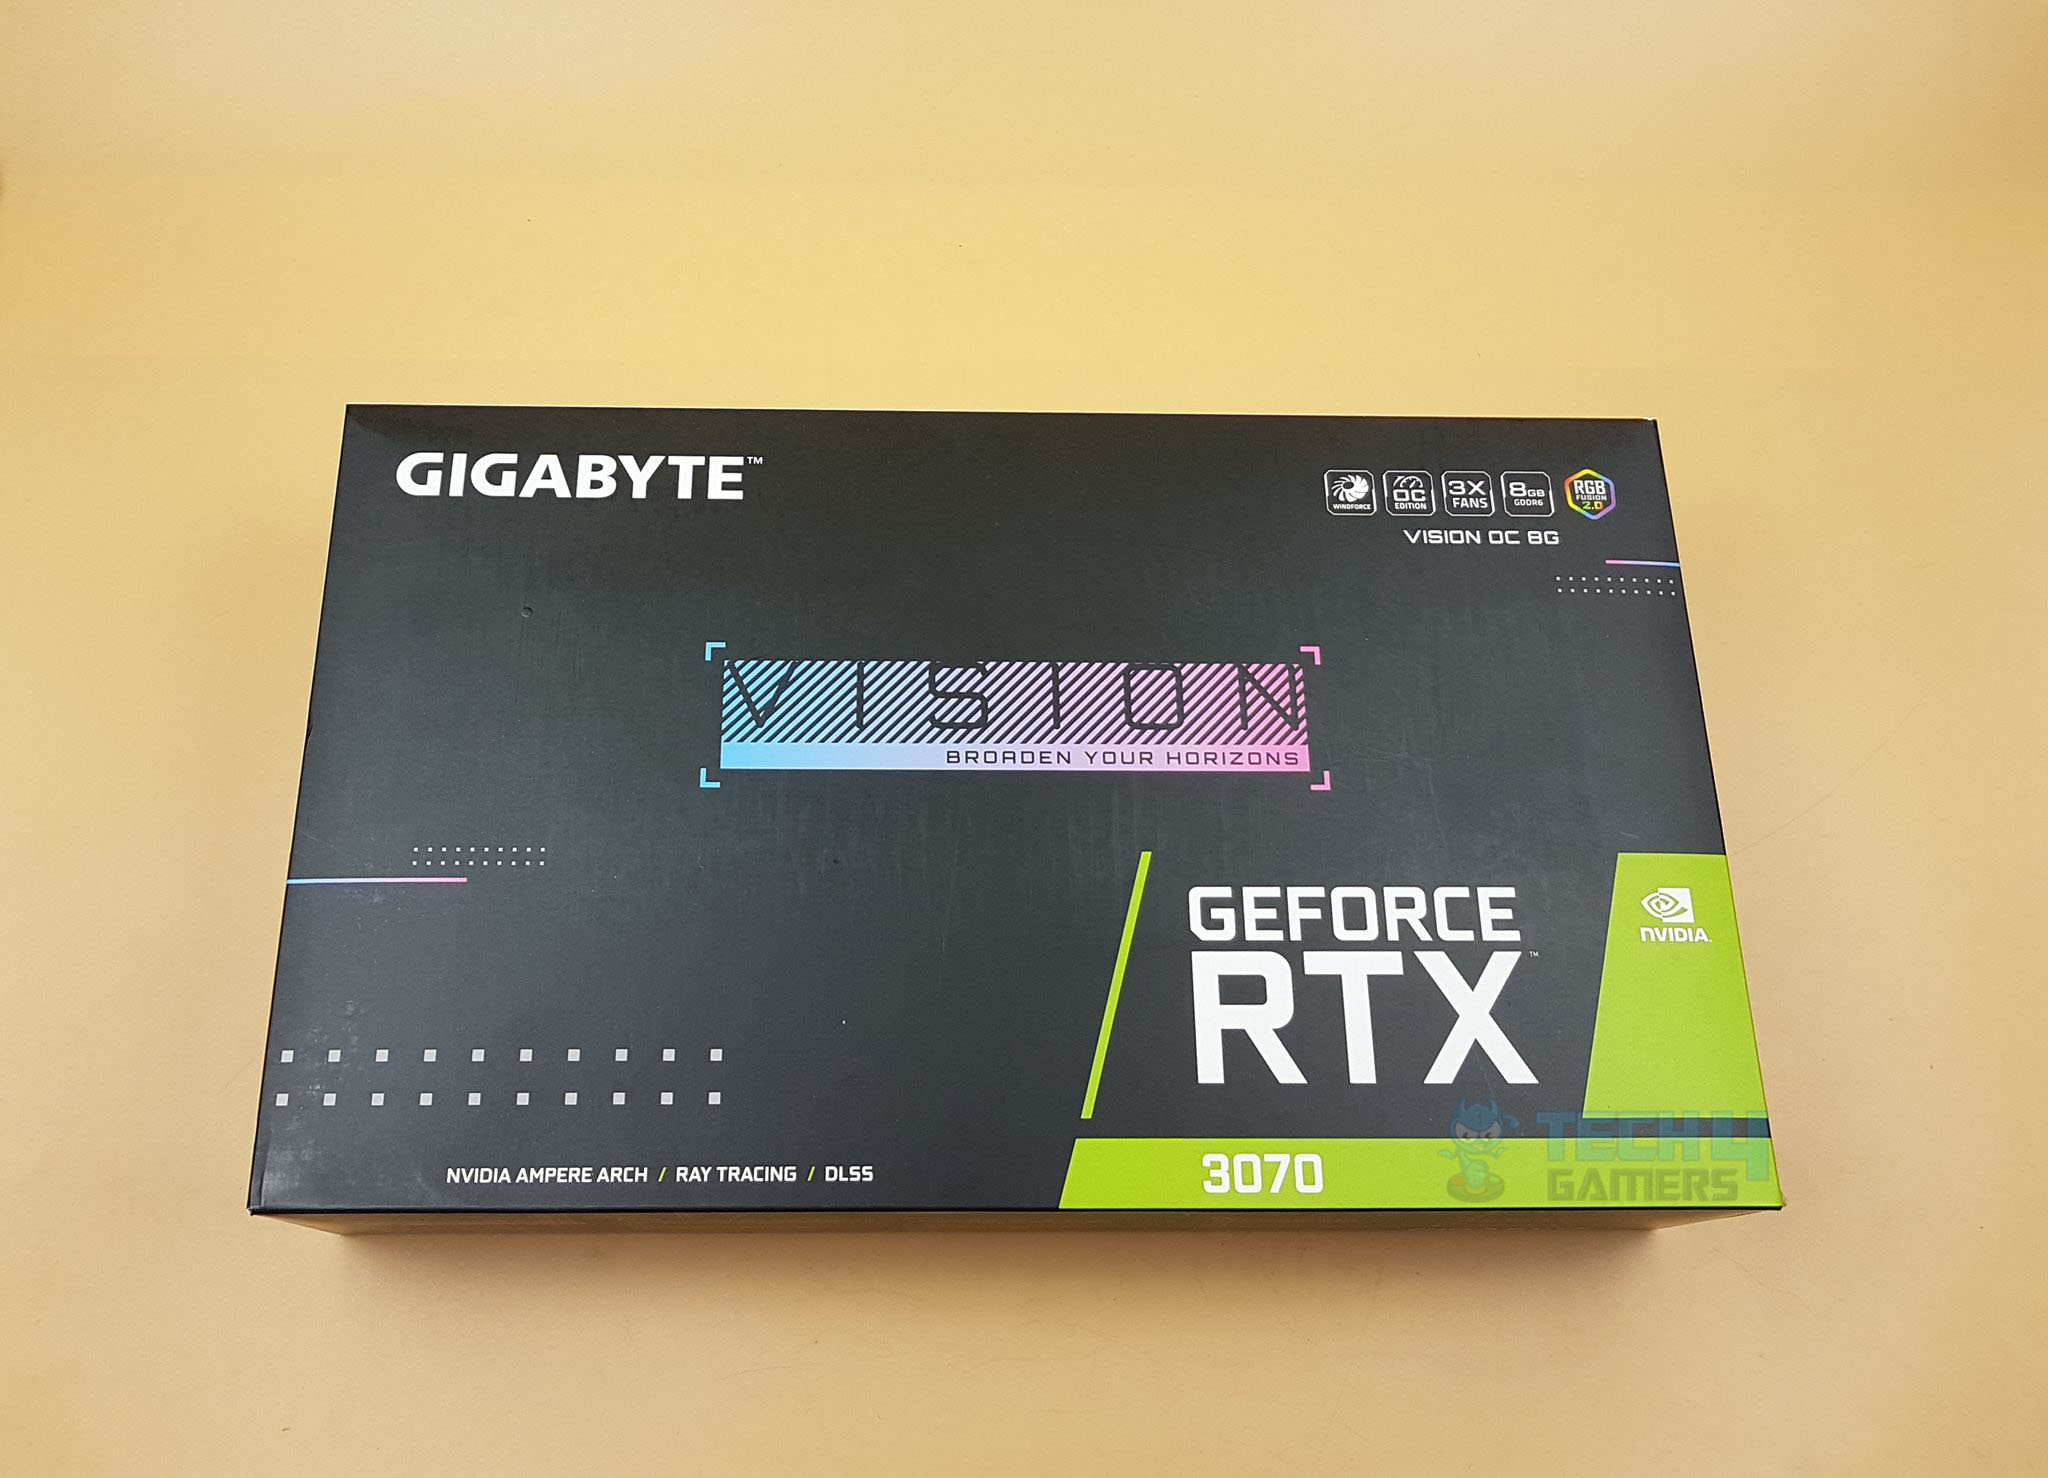 Gigabyte RTX 3070 Packaging